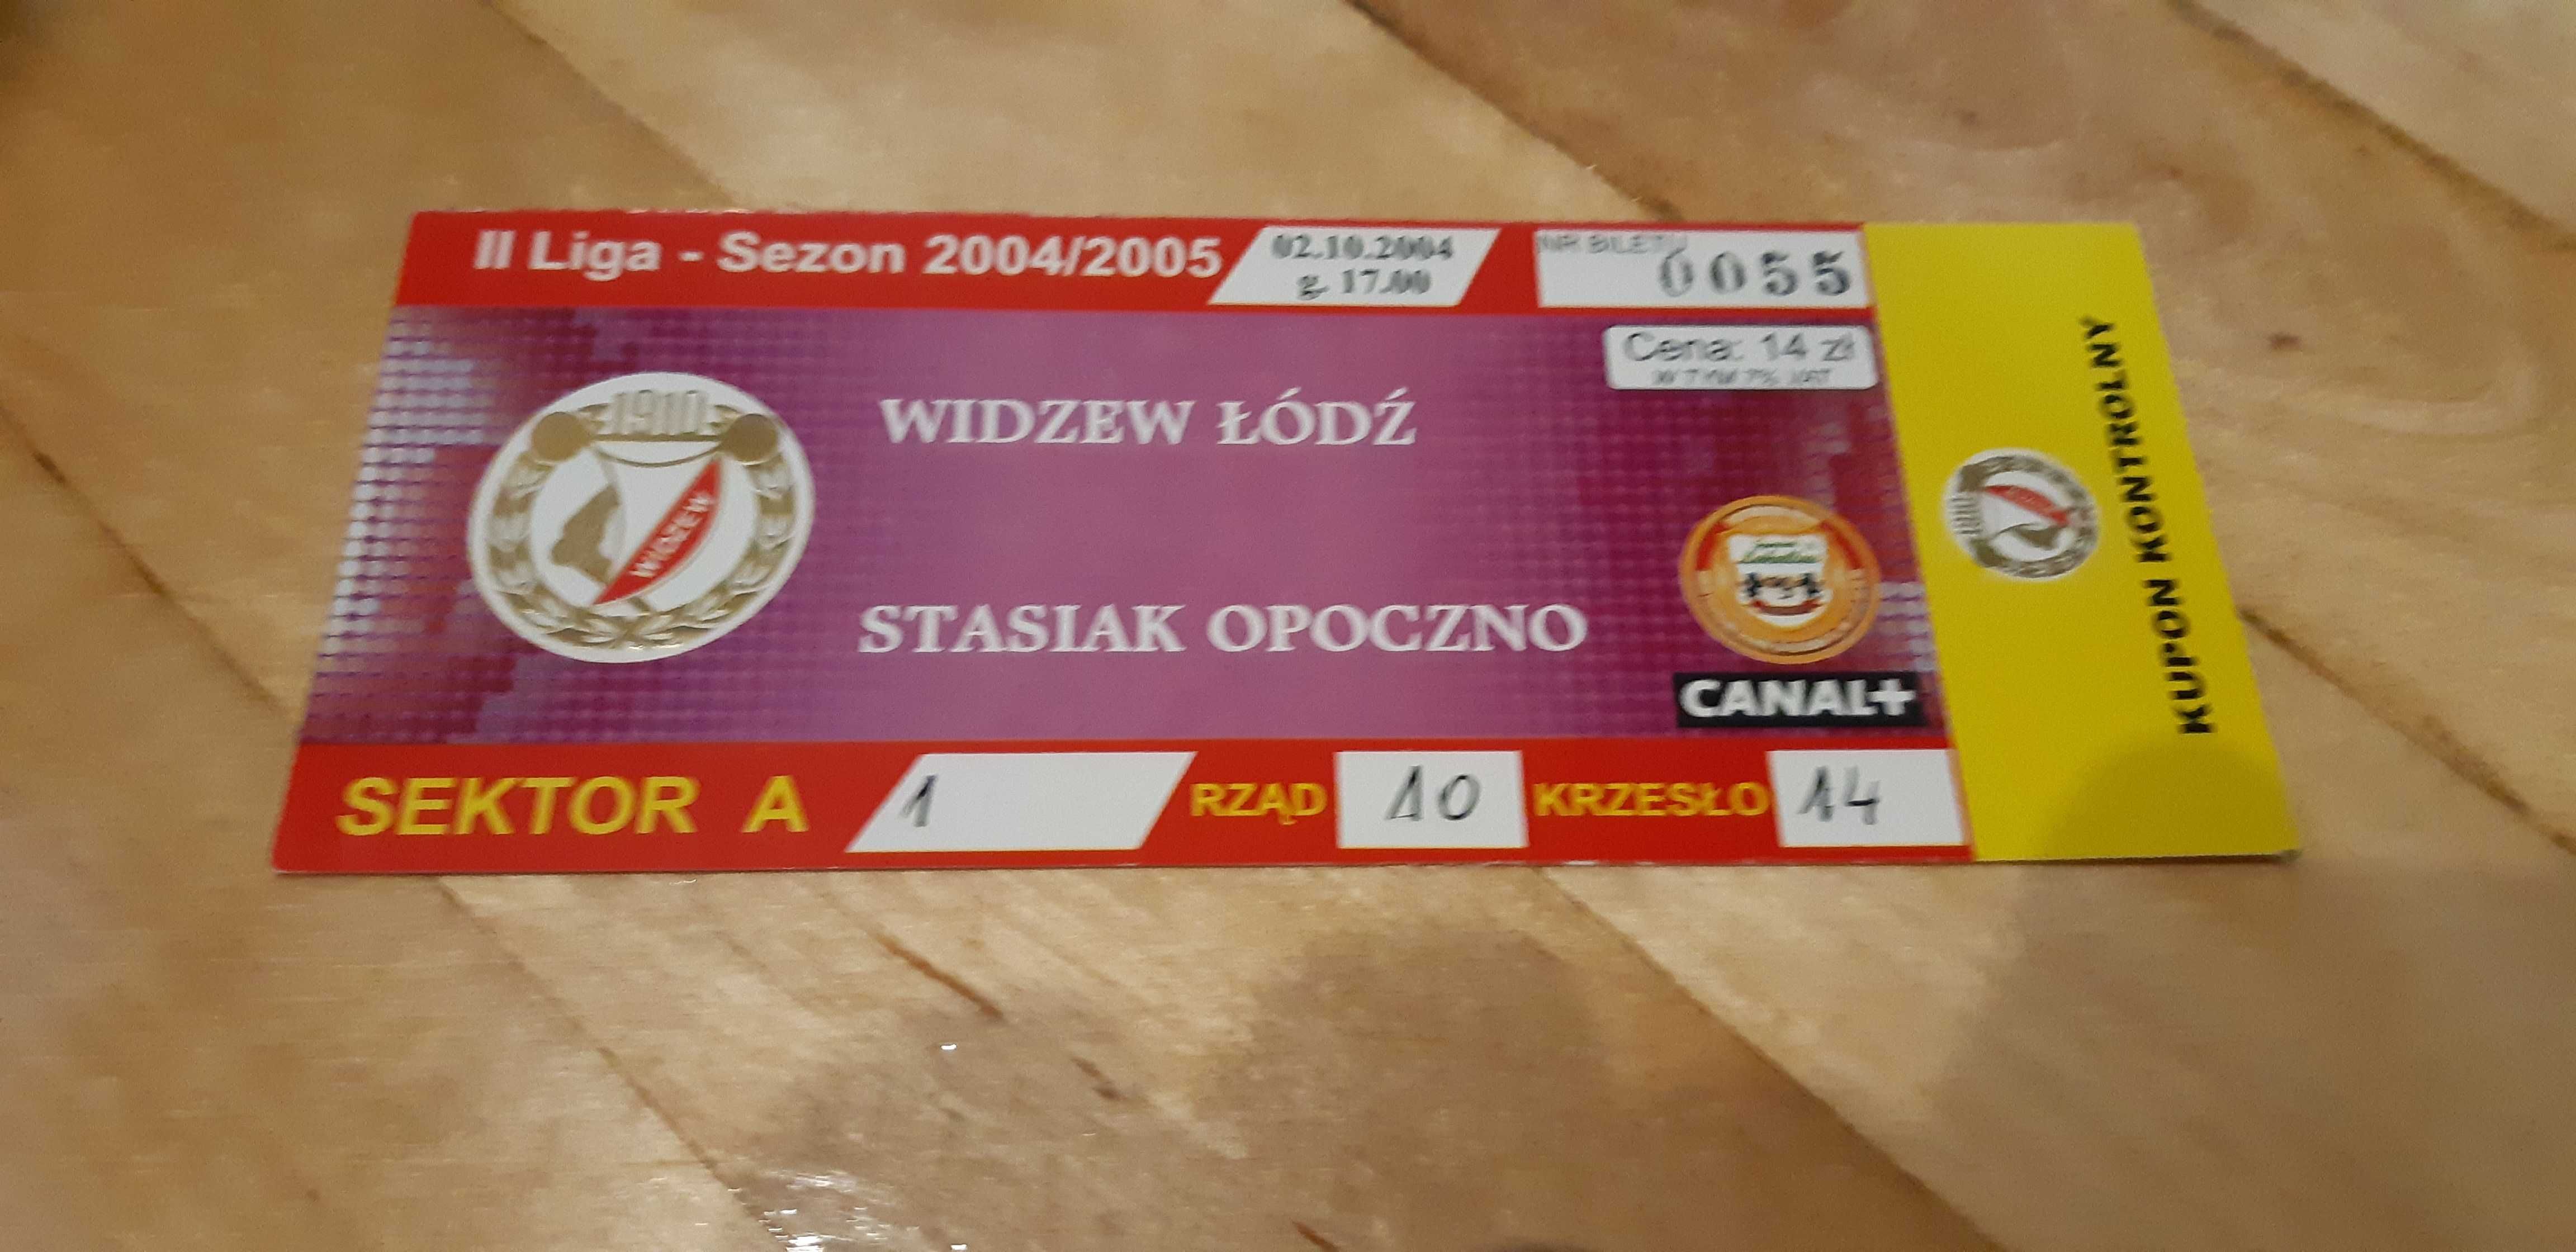 bilet z meczu Widzew Łódź -Stasiak Opoczno 02.10.2004.